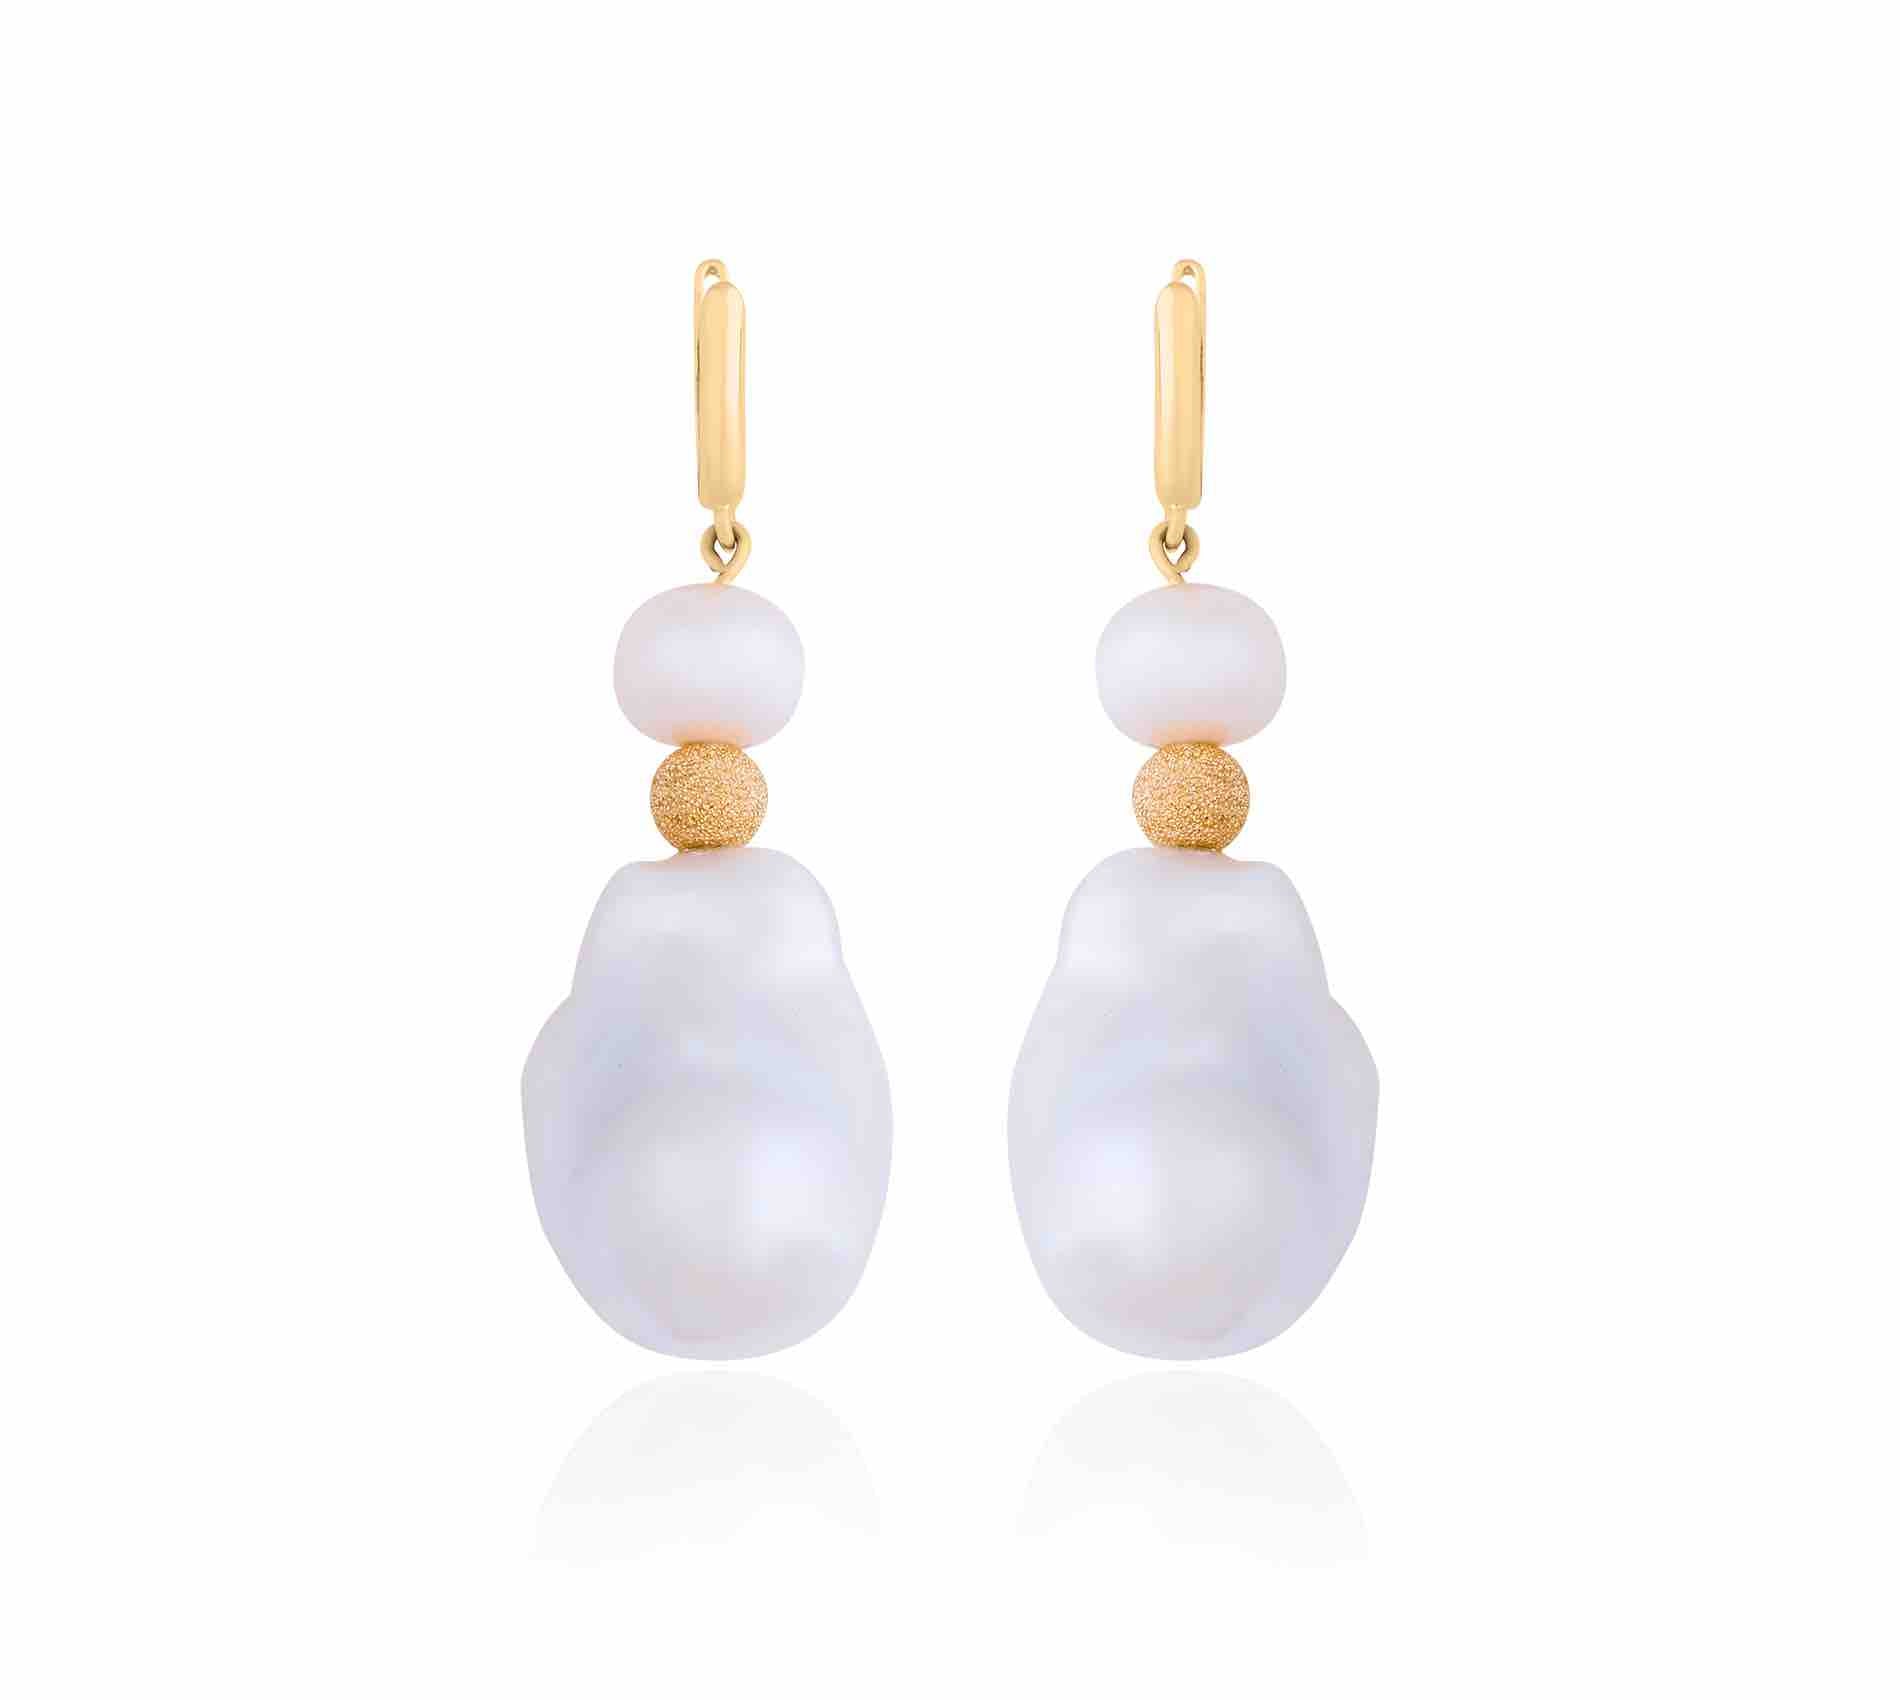 Duo Pearls Earrings, Gold Earrings, 18K Gold Earrings, Gold Jewelry, Pearl Jewelry, Pearl Earrings